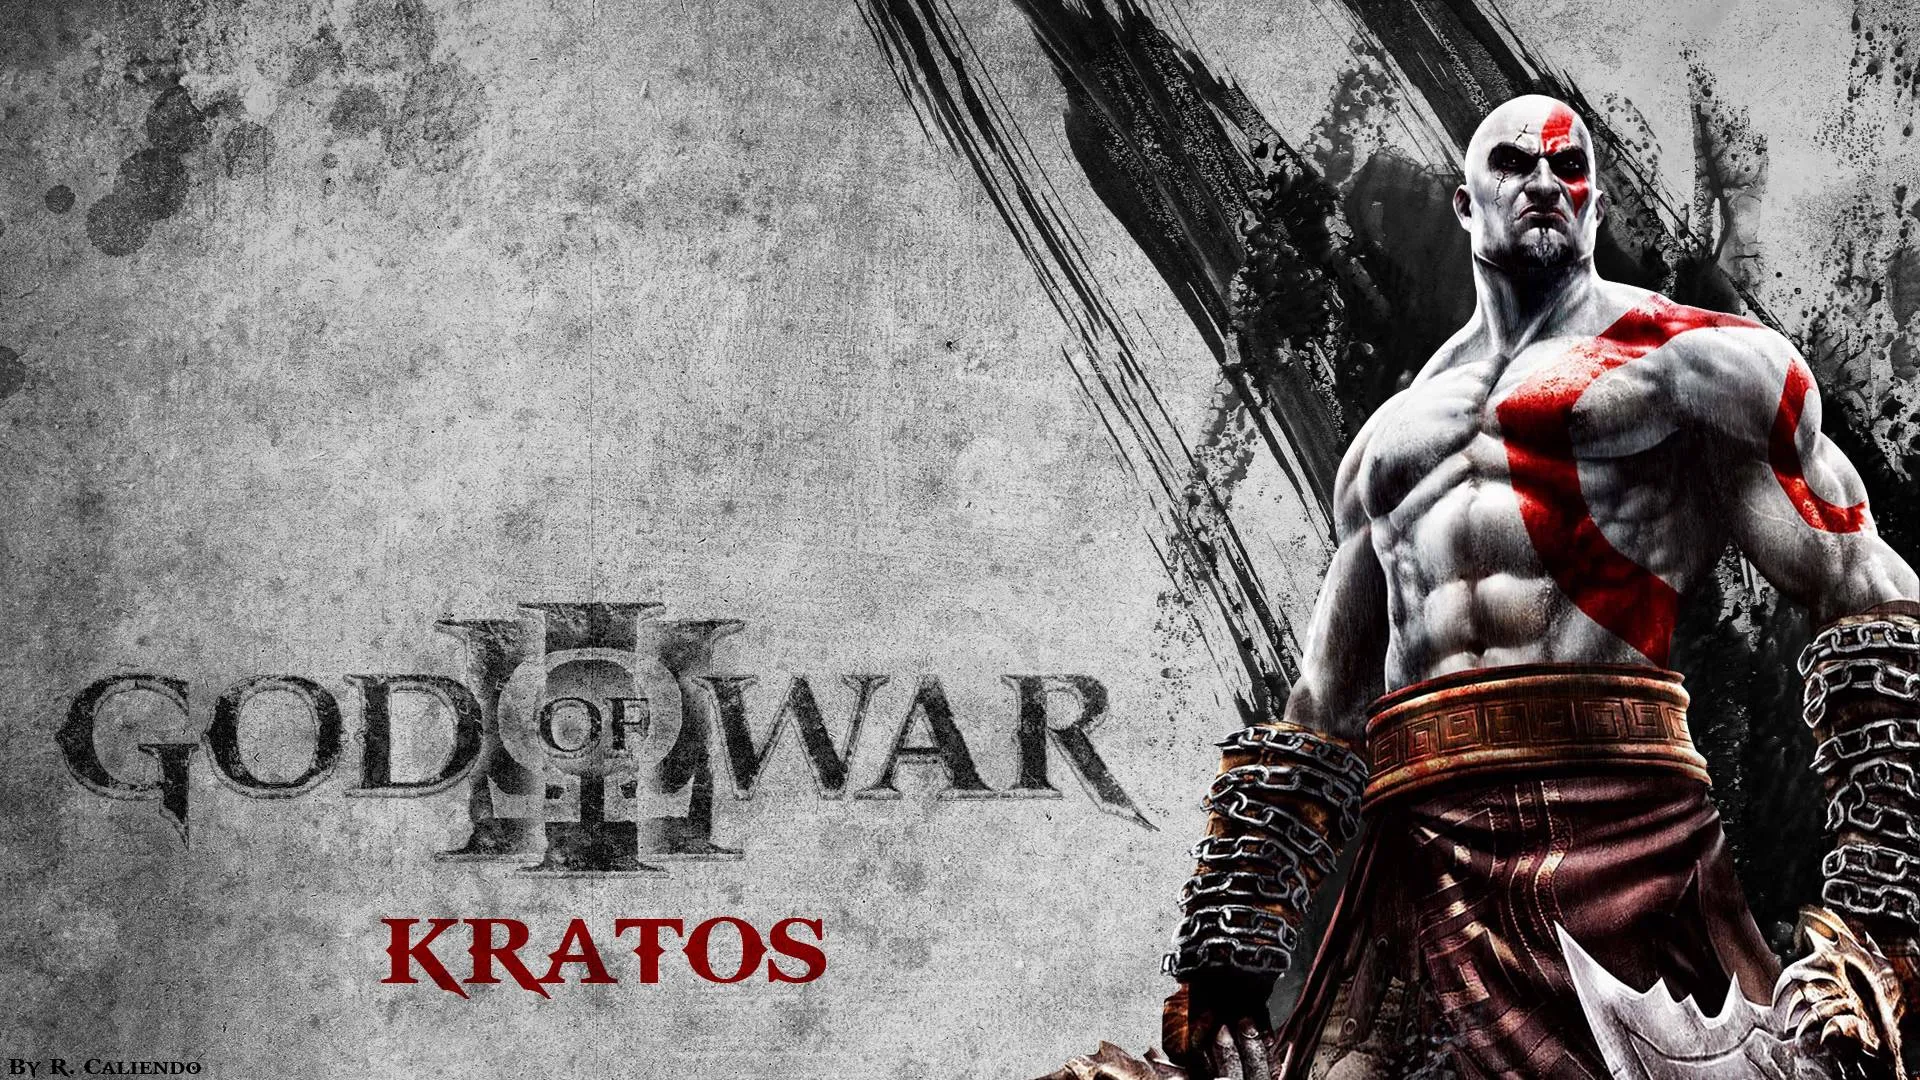 God of war poster